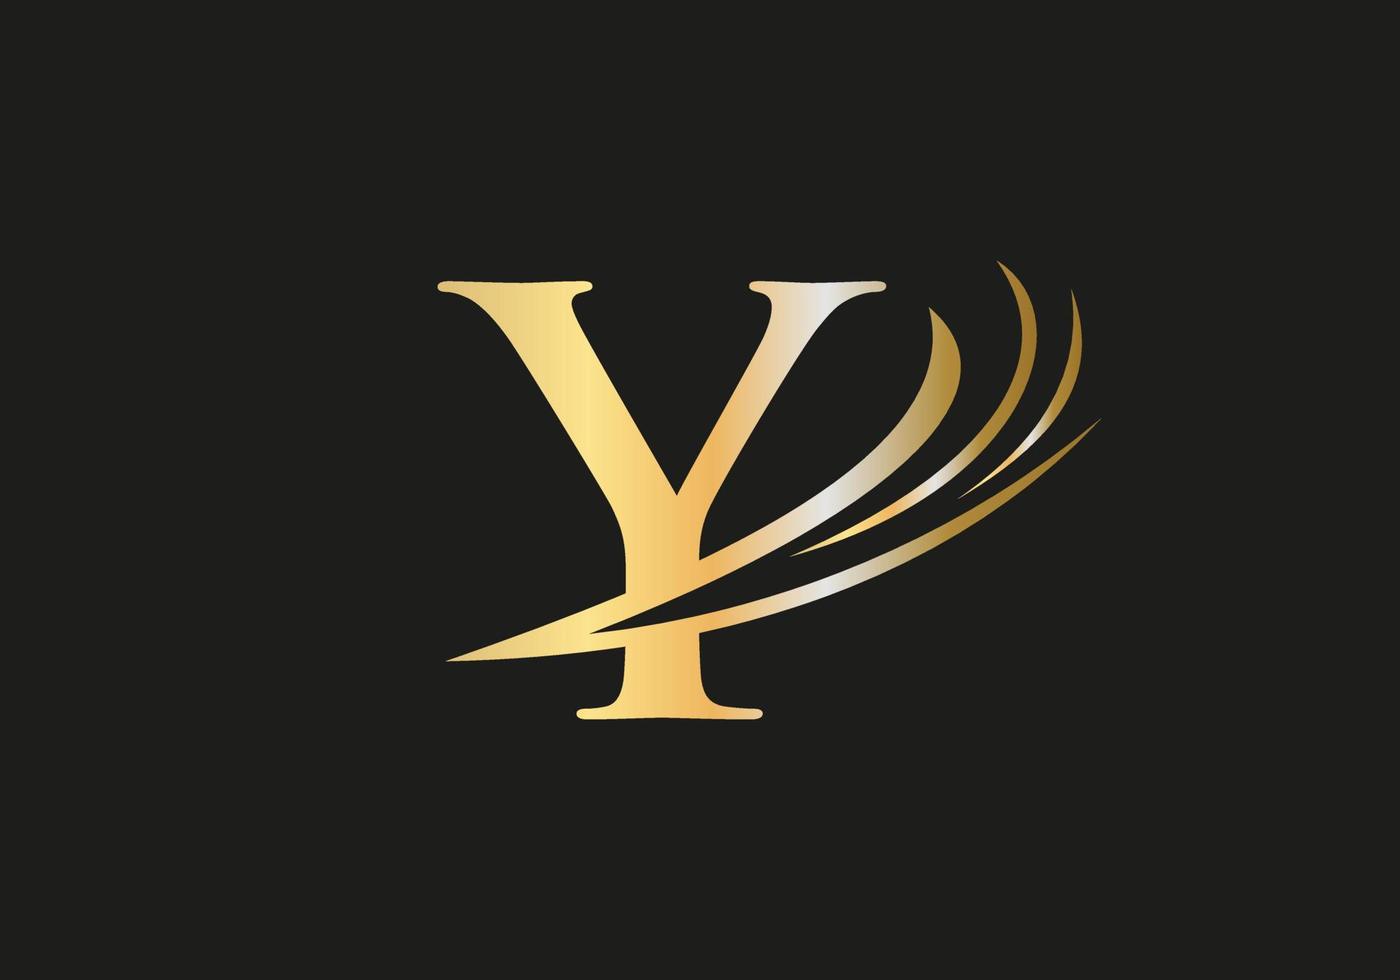 Monogram Y logo design vector template